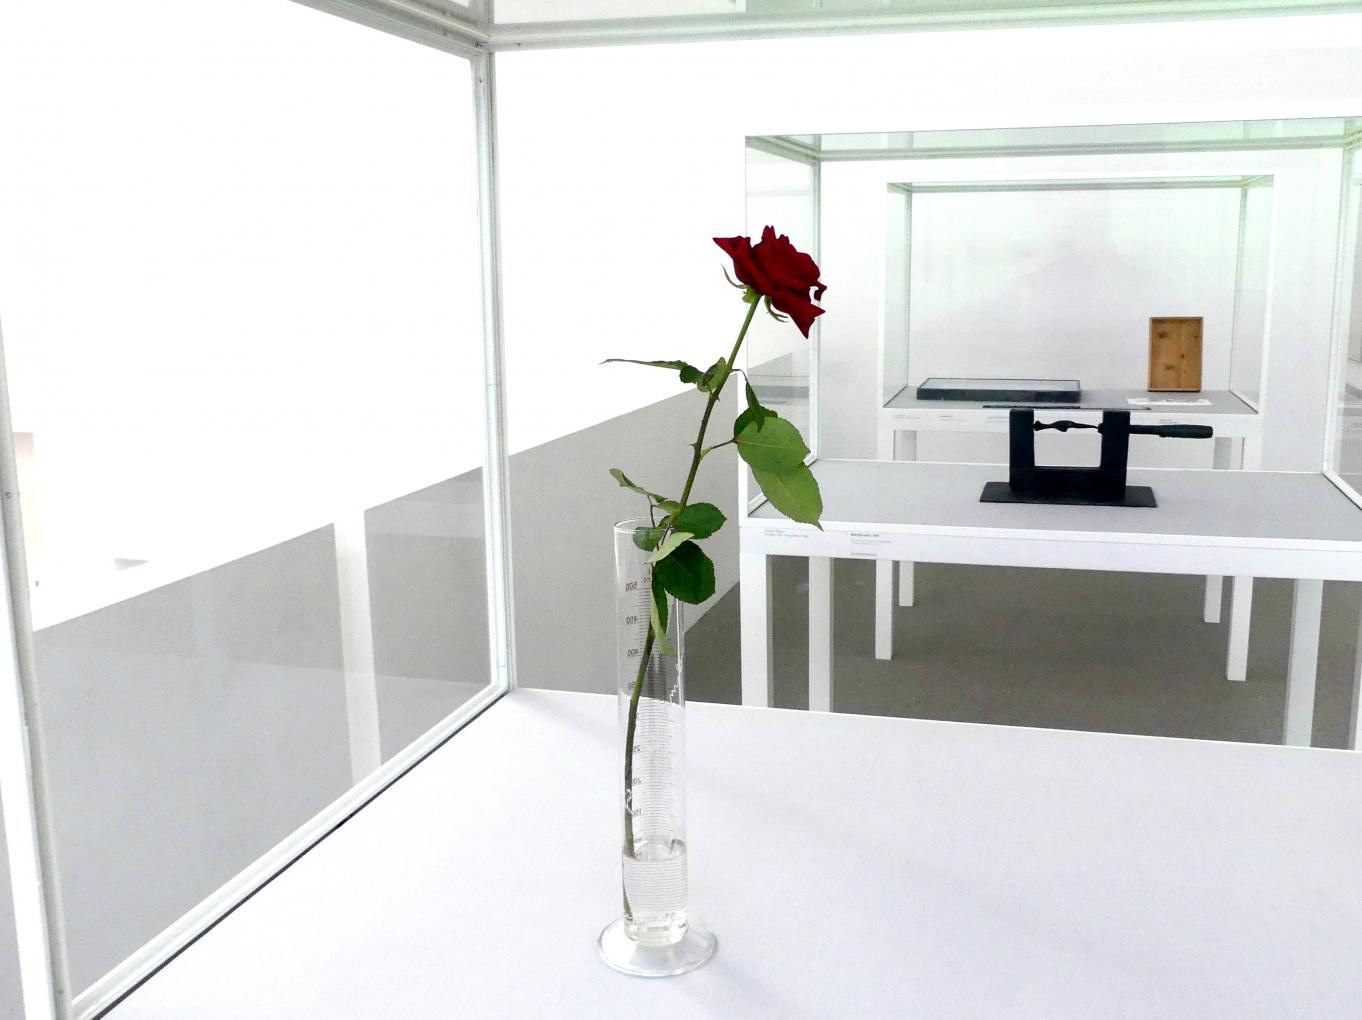 Joseph Beuys (1948–1985), Rose für direkte Demokratie, München, Pinakothek der Moderne, Saal 19, 1973